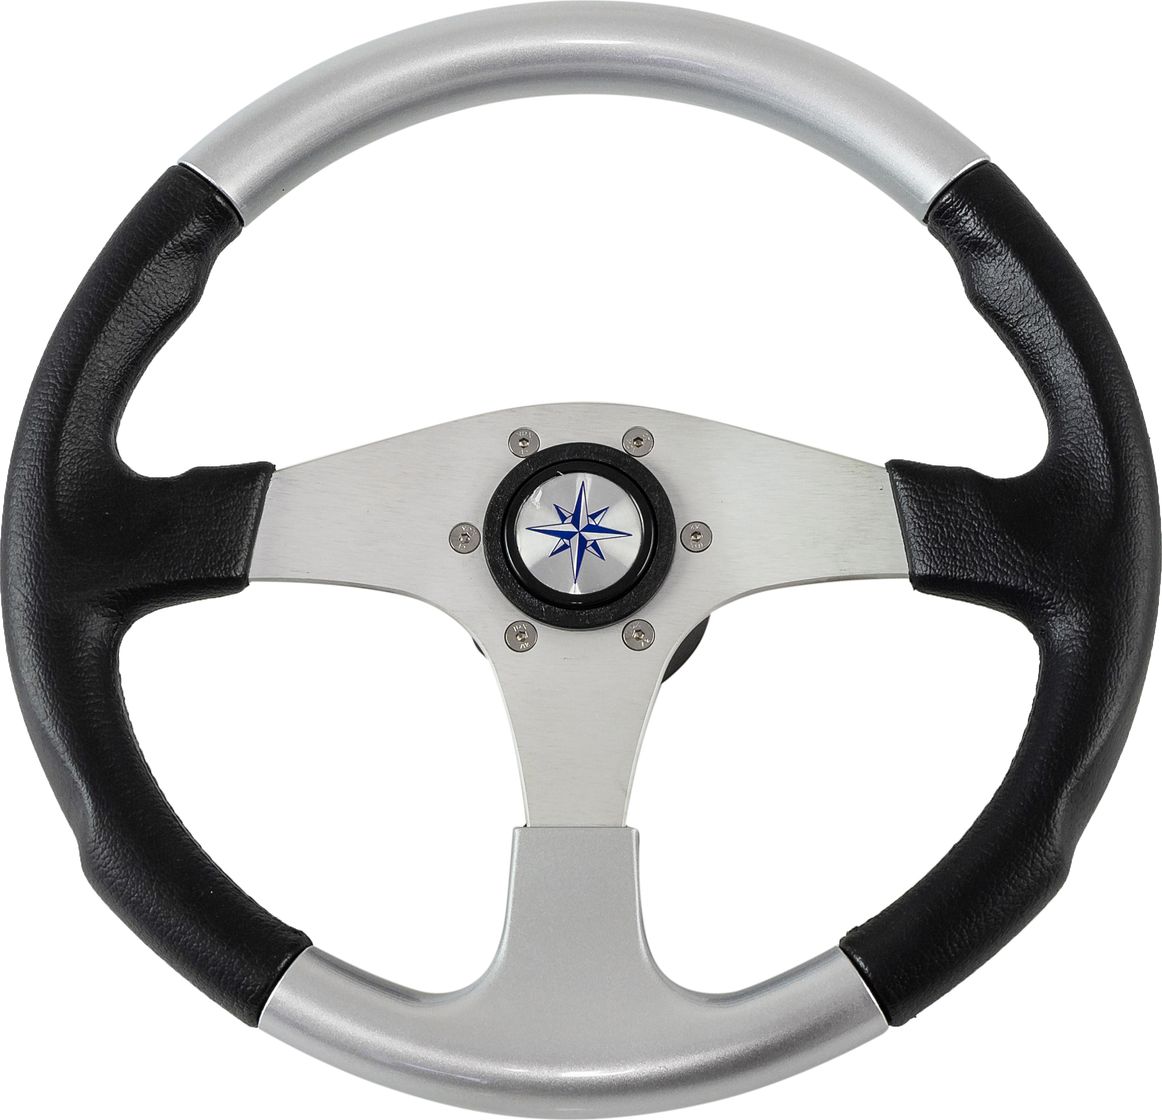 Рулевое колесо EVO MARINE 2 обод черносеребряный, спицы серебряные д. 355 мм VN850001-93 рулевое колесо leader wood деревянный обод серебряные спицы д 360 мм vn7360 33